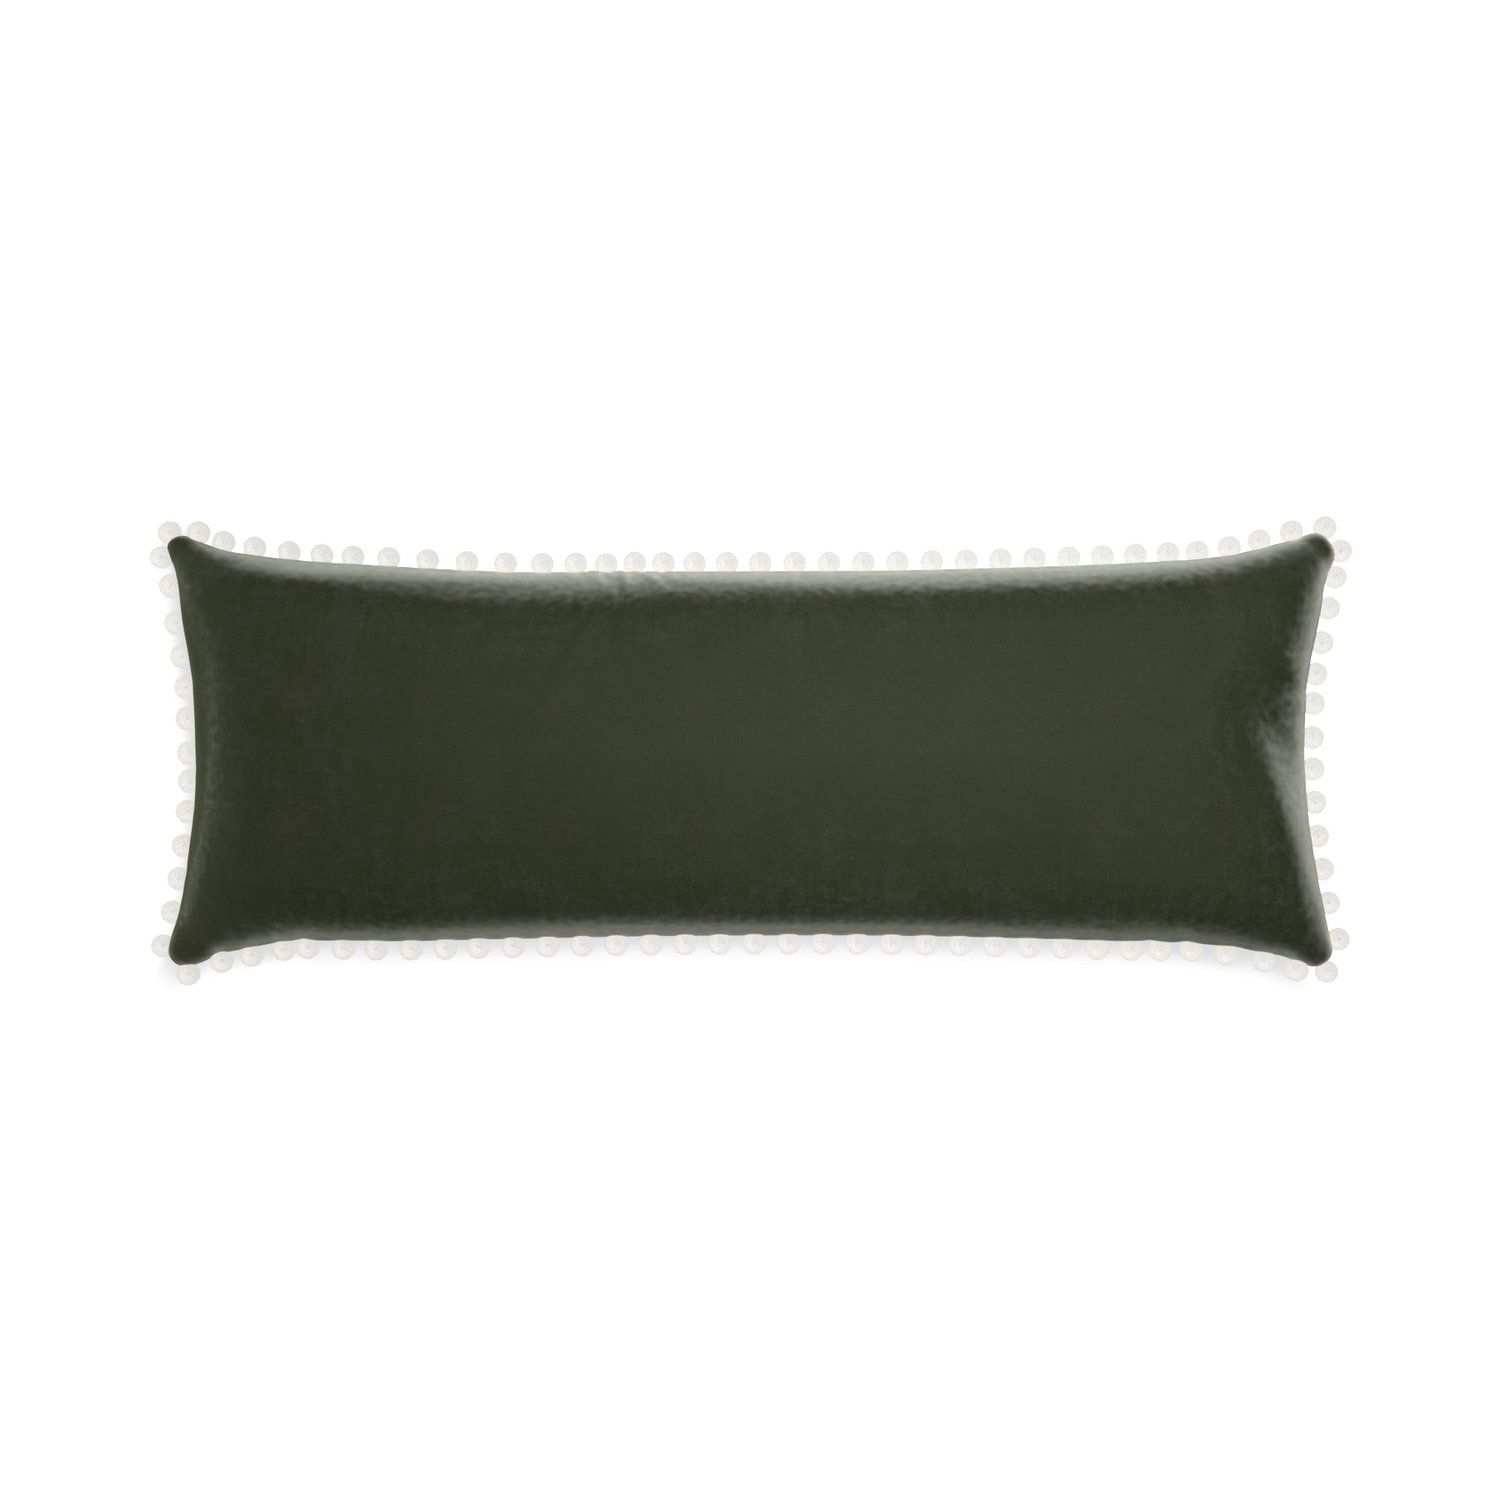 rectangle fern green velvet pillow with white pom poms